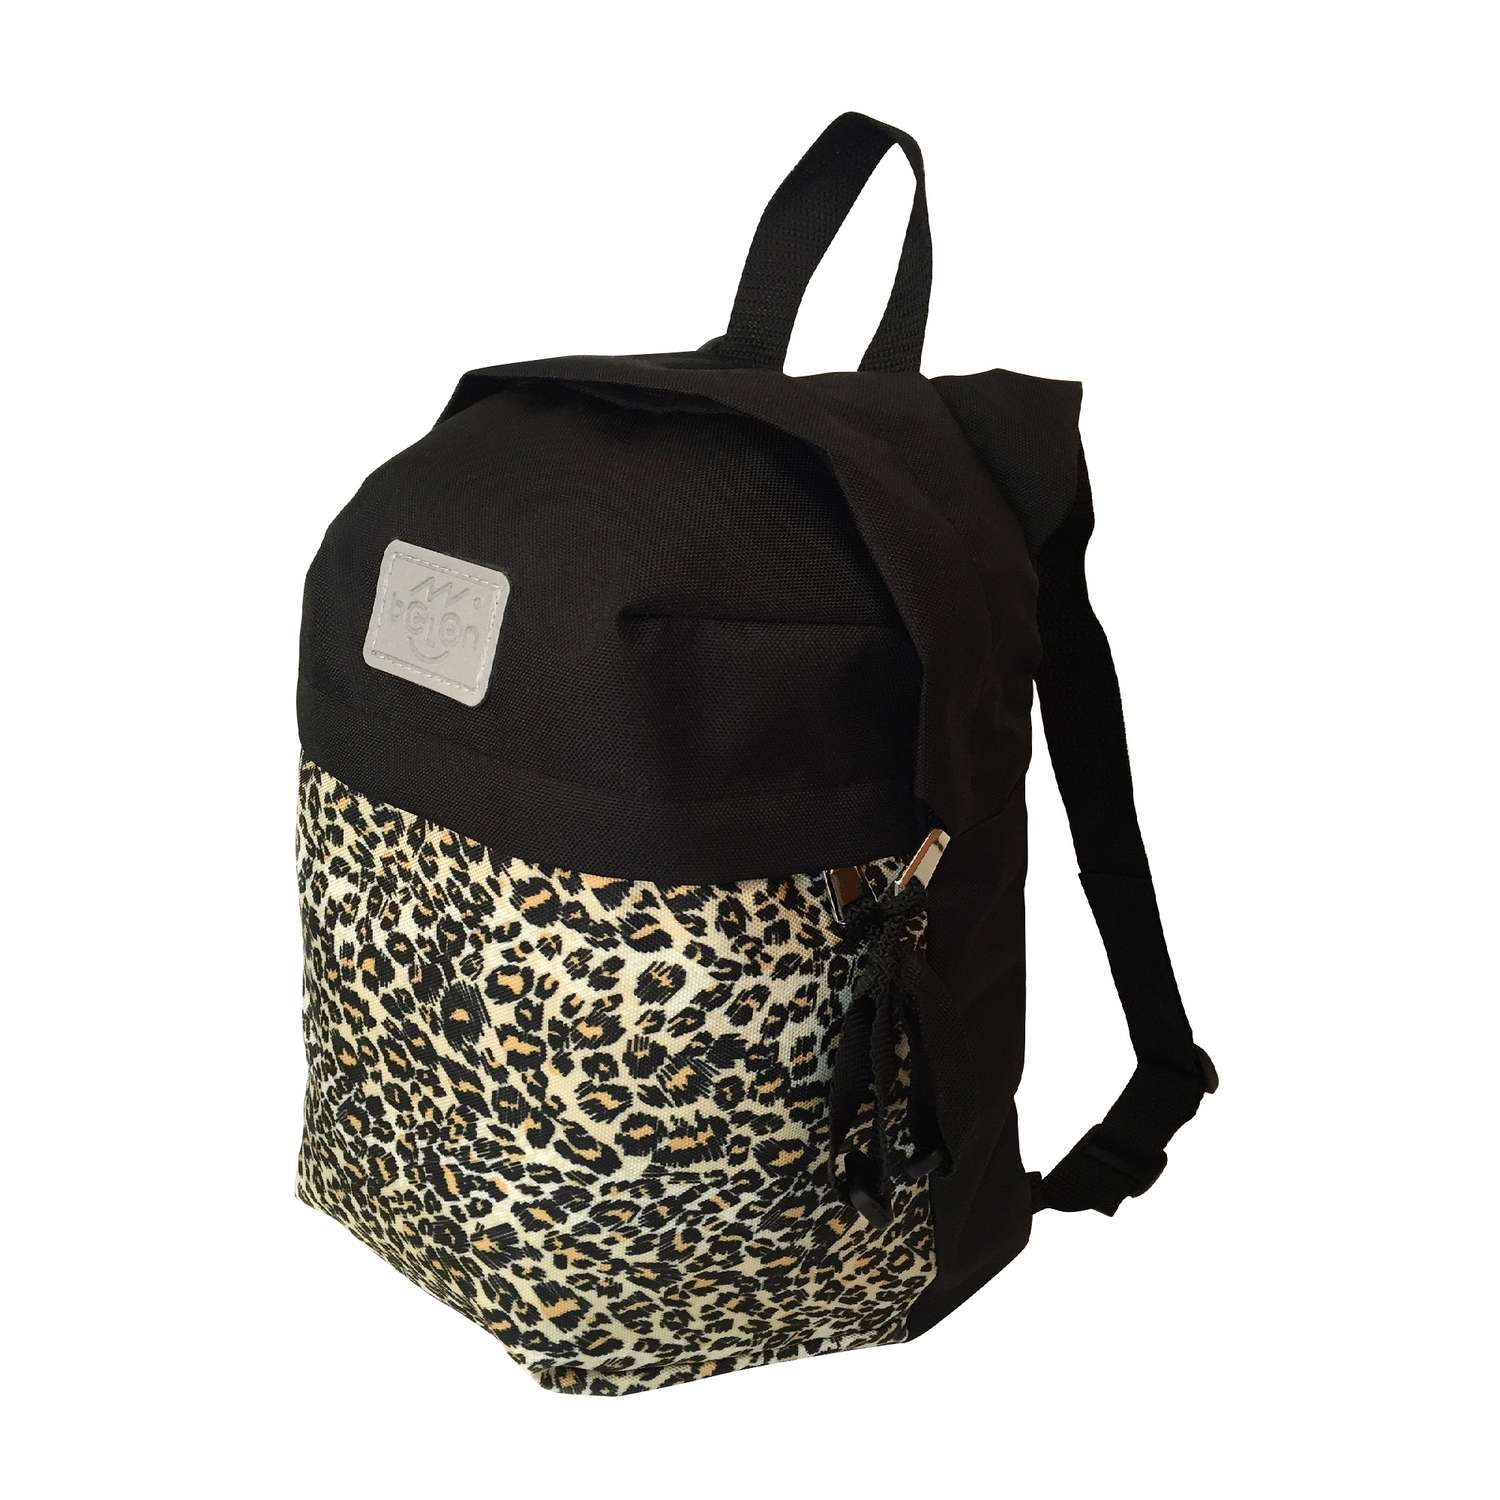 Рюкзак Belon familia принт леопард размер 35х25х16 см - фото 1